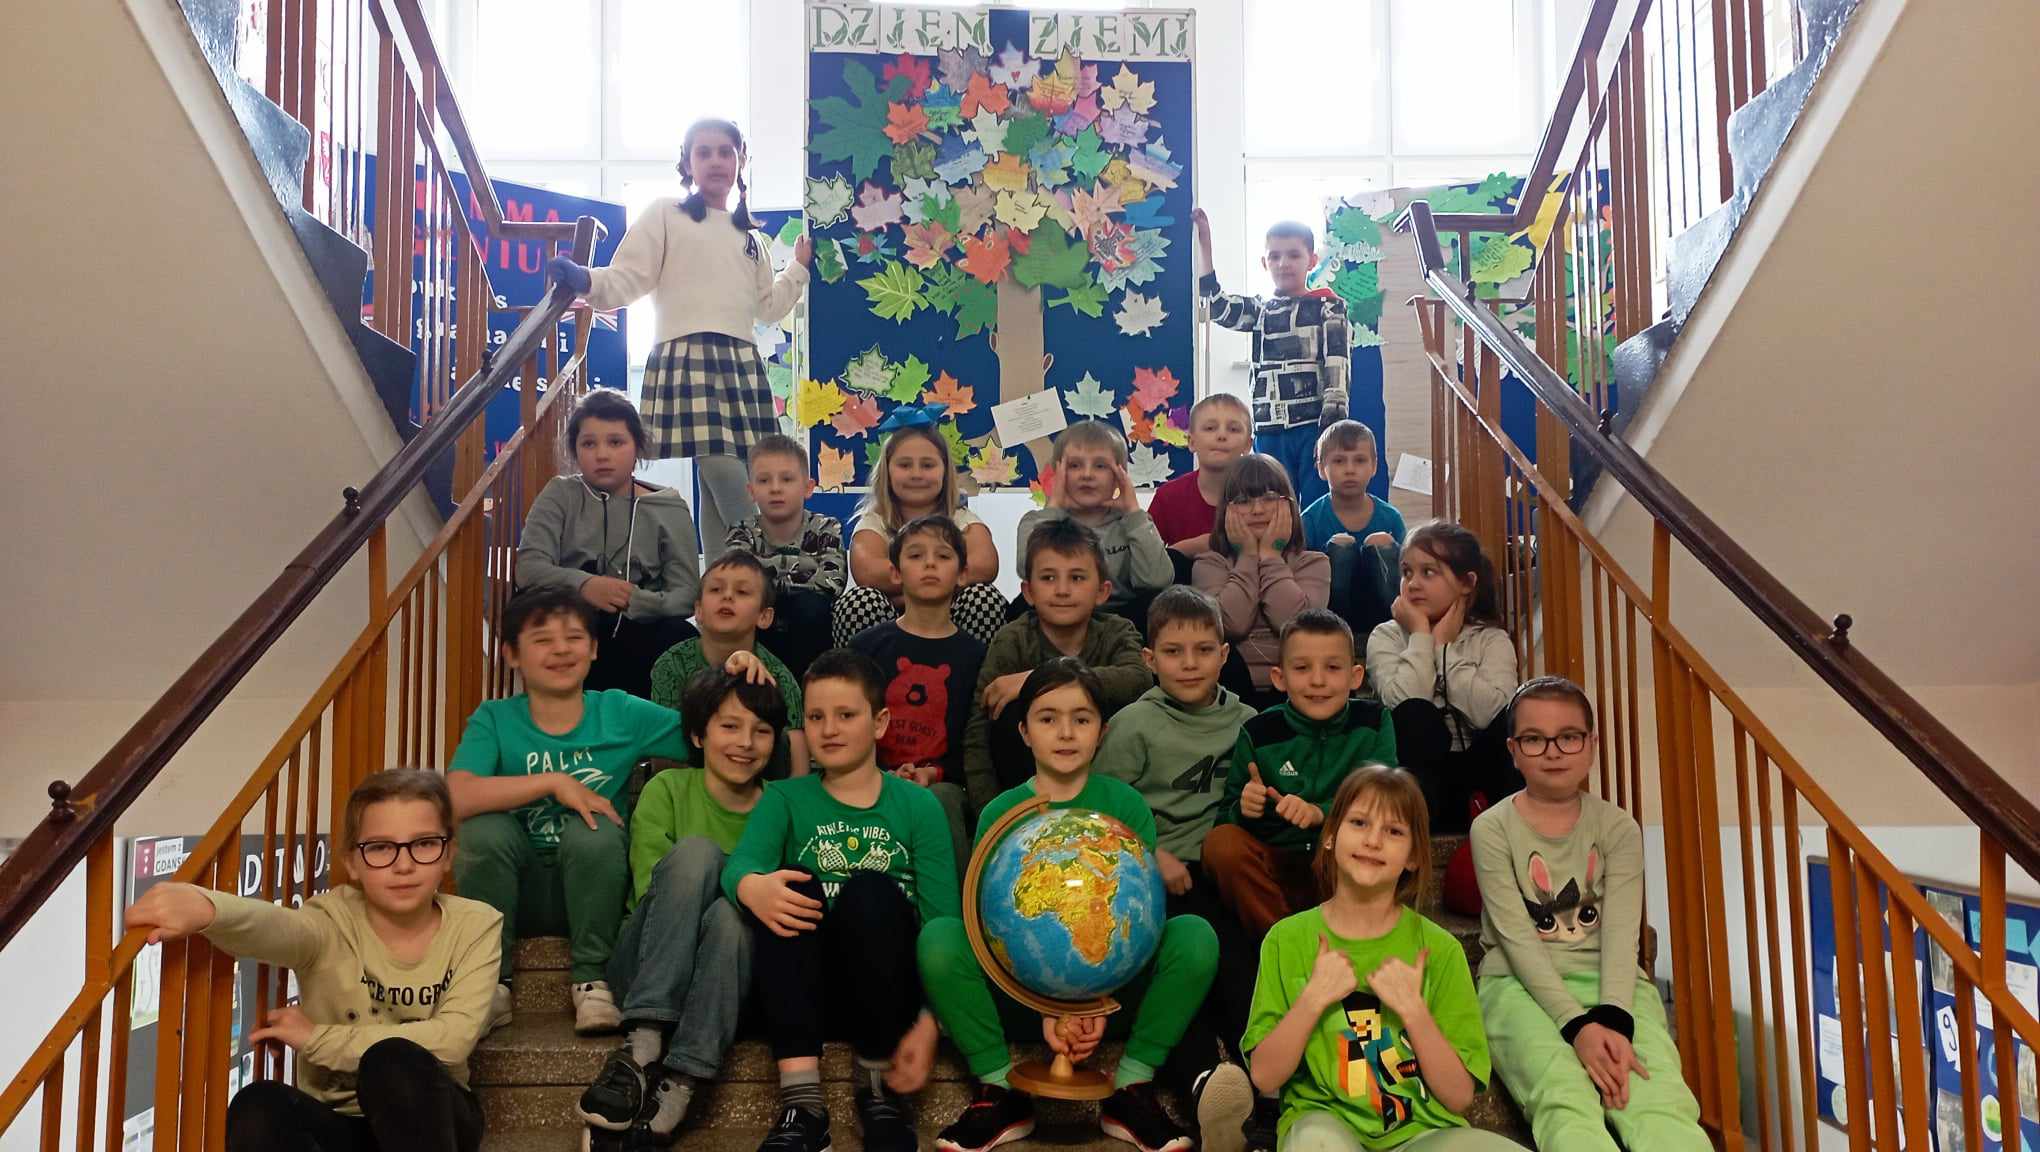 Grupa uśmiechniętych dzieci siedzi w trzech rzędach na schodach. Dziewczynka siedząca pośrodku pierwszego rzędu trzyma duży globus. W tle dwoje stojących dzieci trzyma tablicę przedstawiającą zrobione z papieru drzewo z liśćmi i napis "Dzień Ziemi".